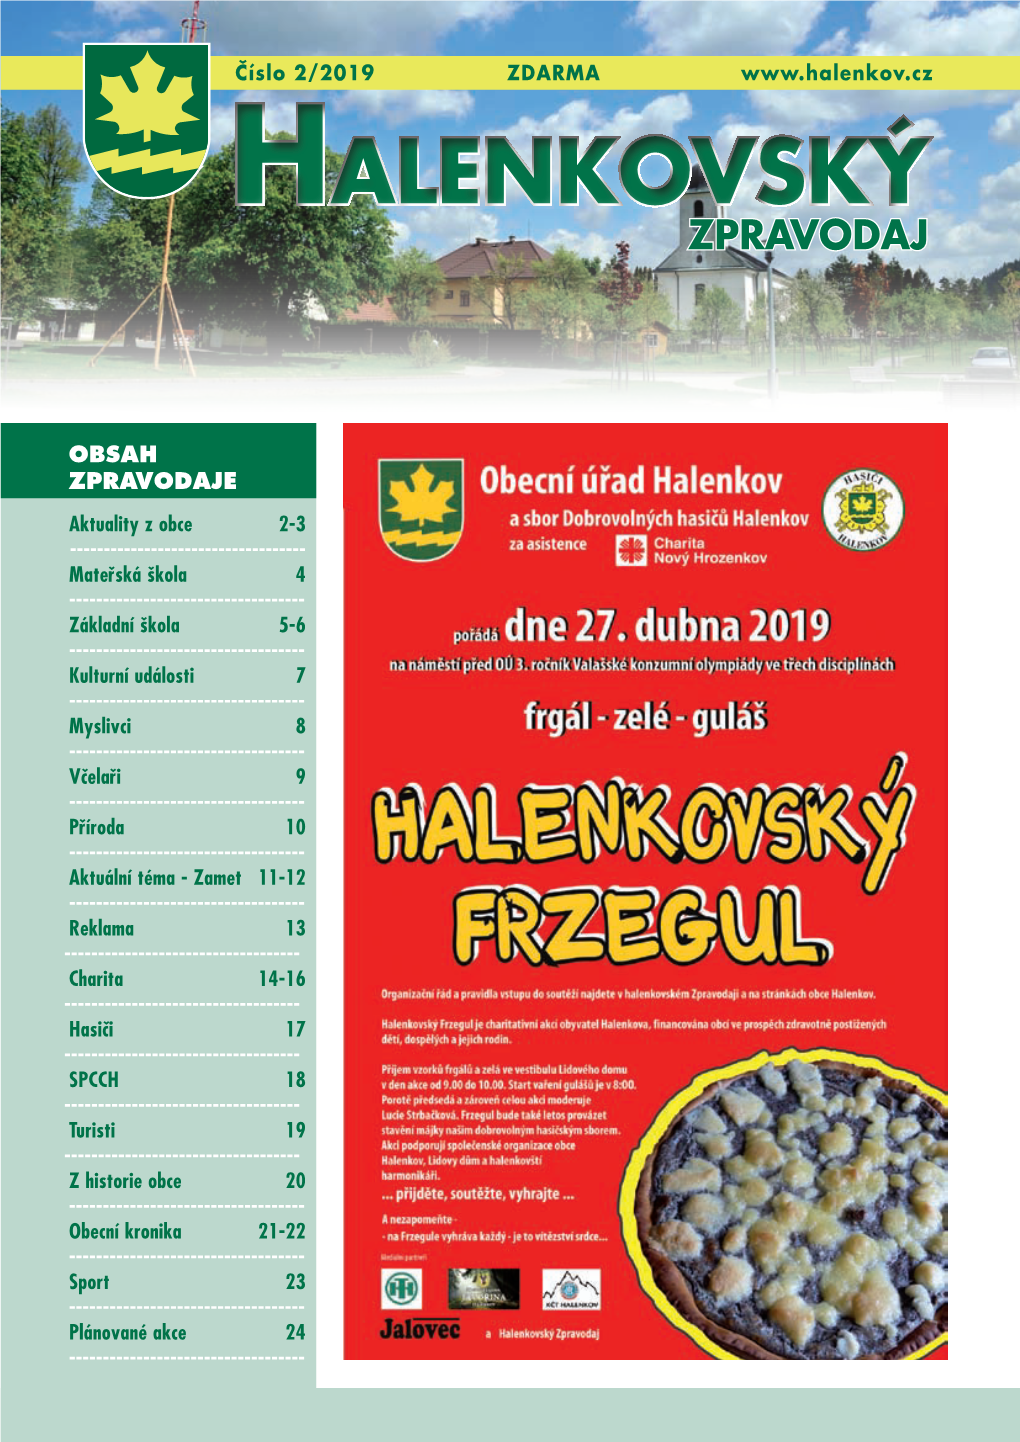 Halenkovský Frzegul 2019 - 3